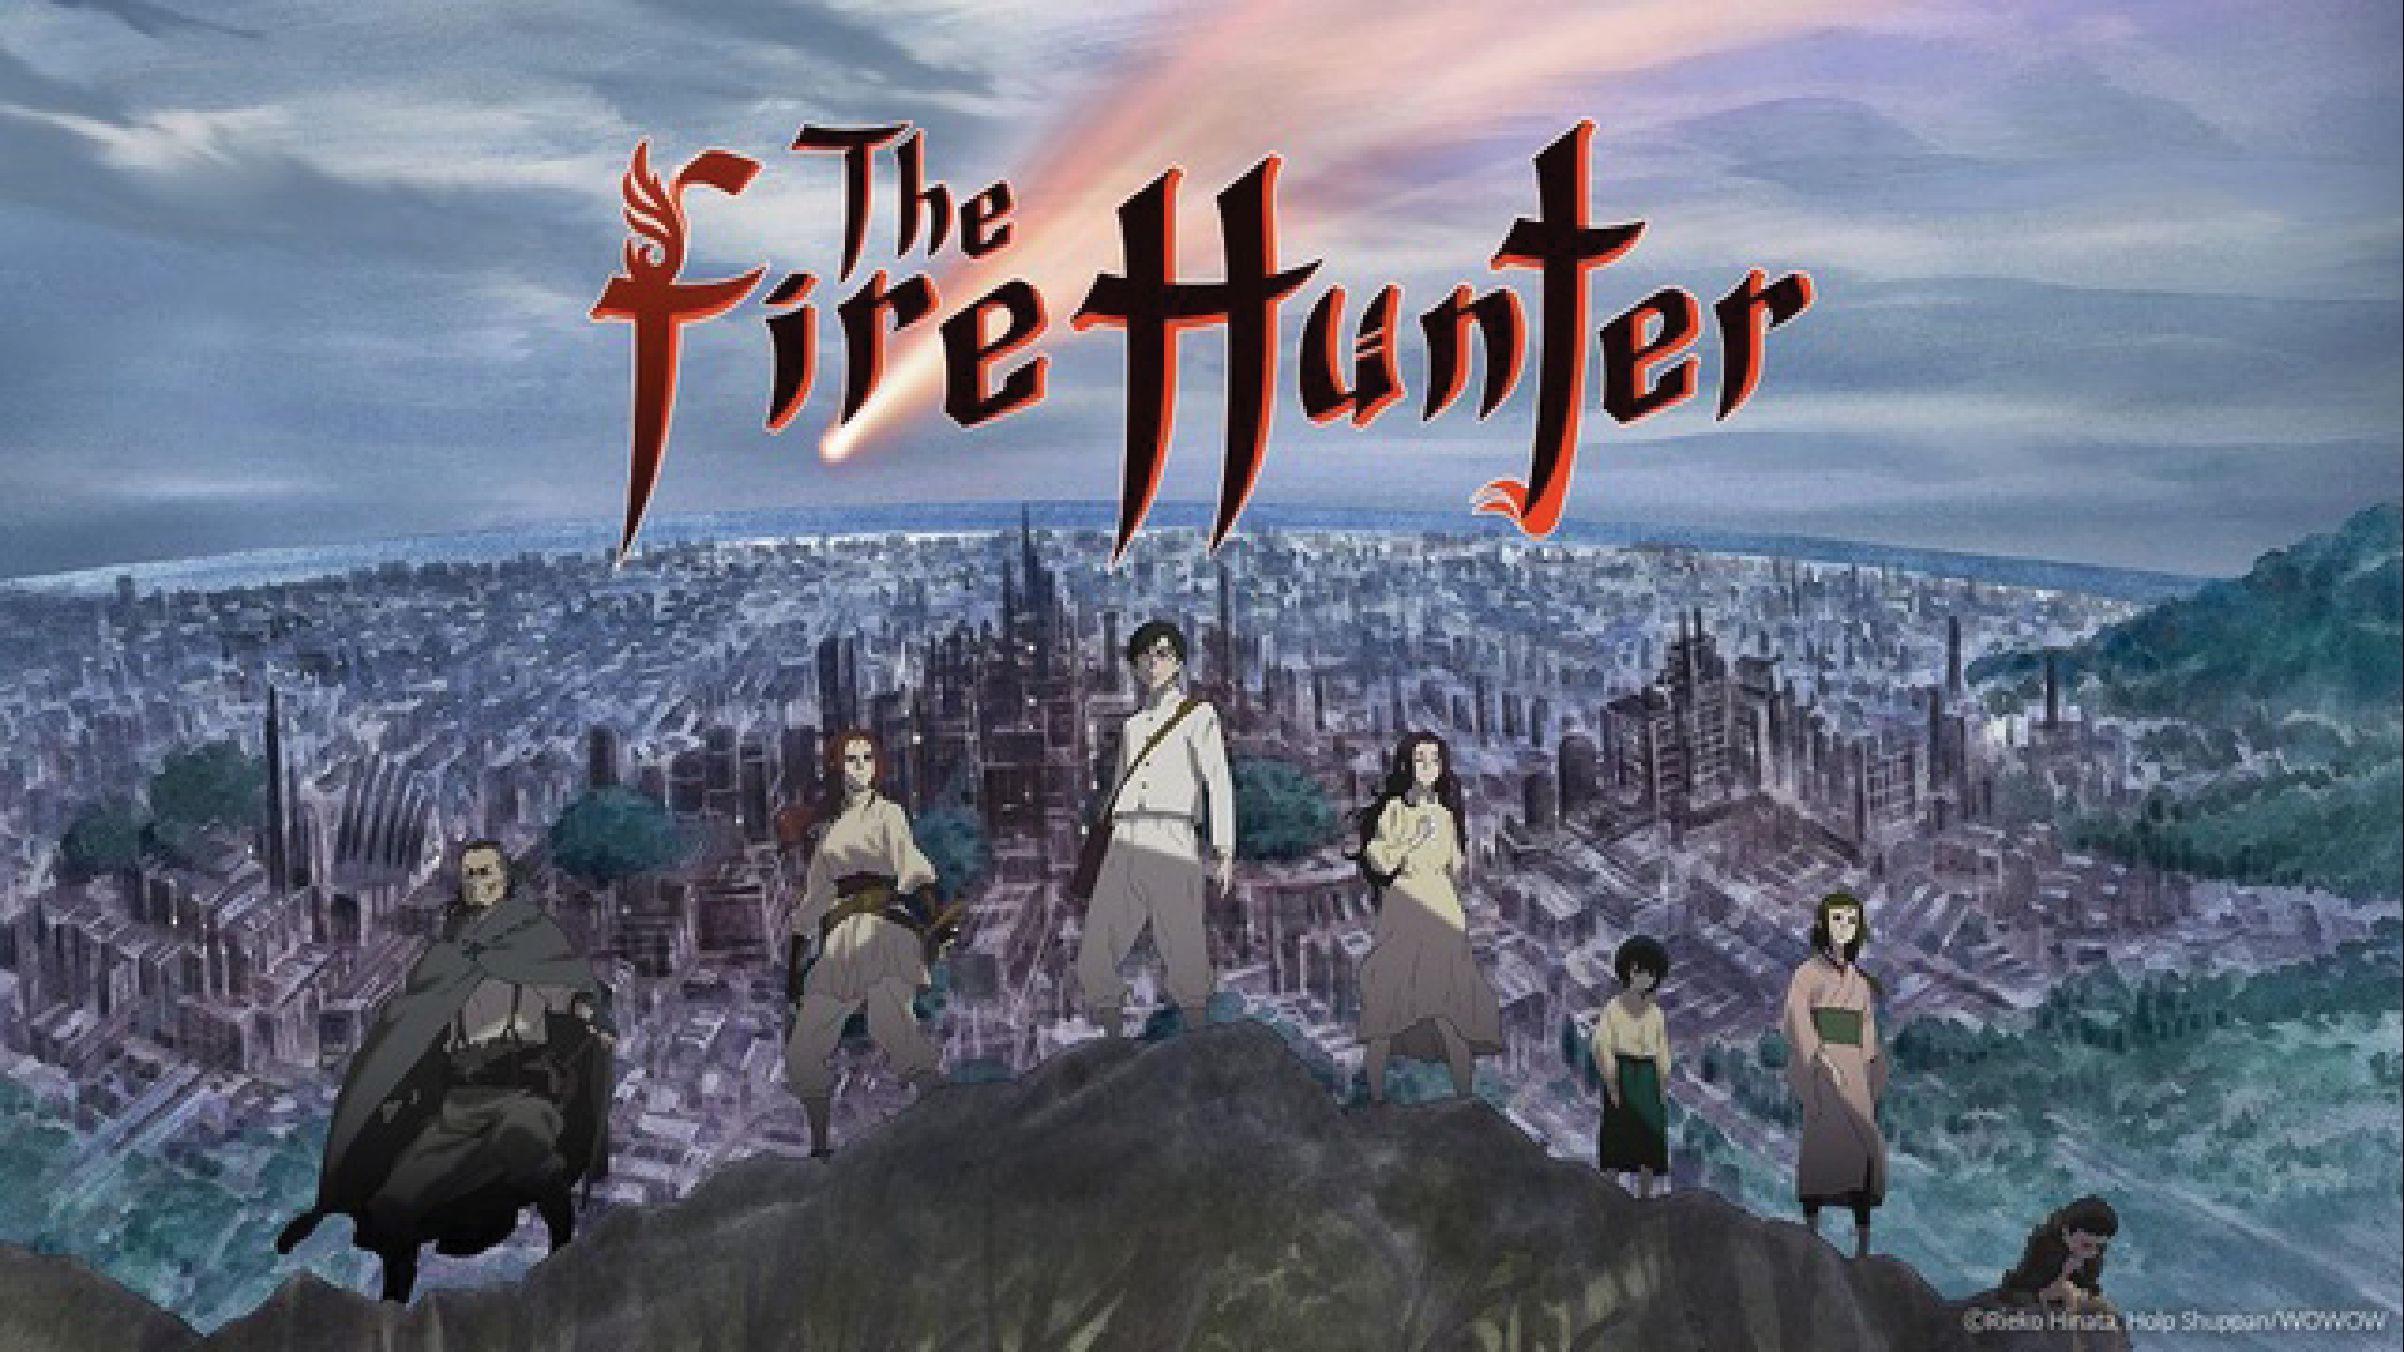 Hunter X Hunter Manga Creator Teases His Return to the Series - Anime Fire